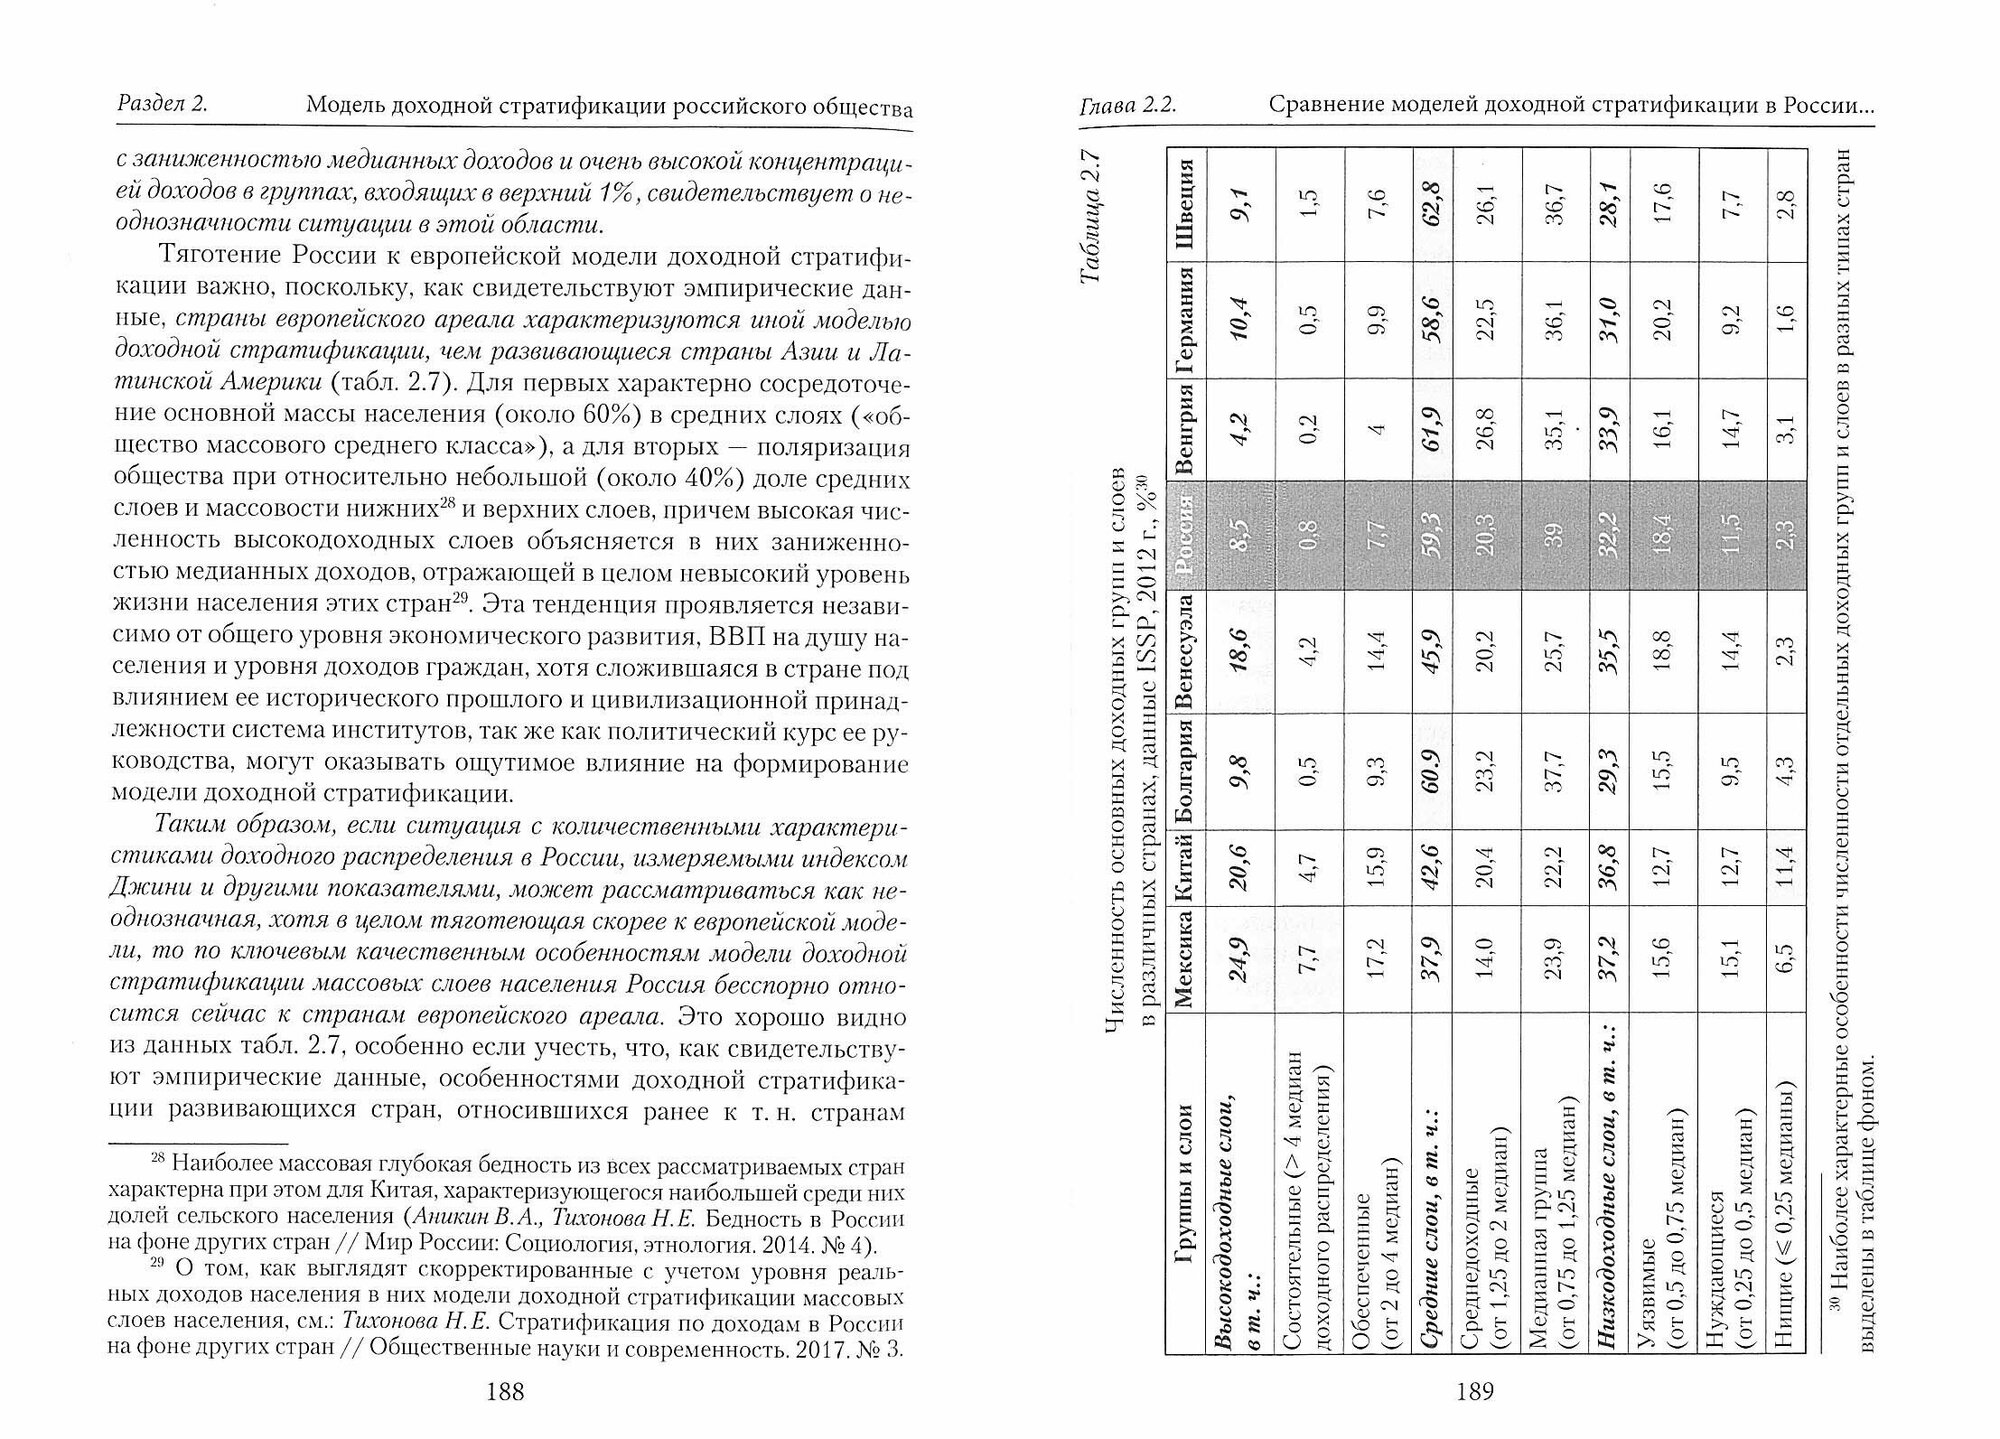 Модель доходной стратификации российского общества. Динамика, факторы, межстрановые сравнения - фото №3